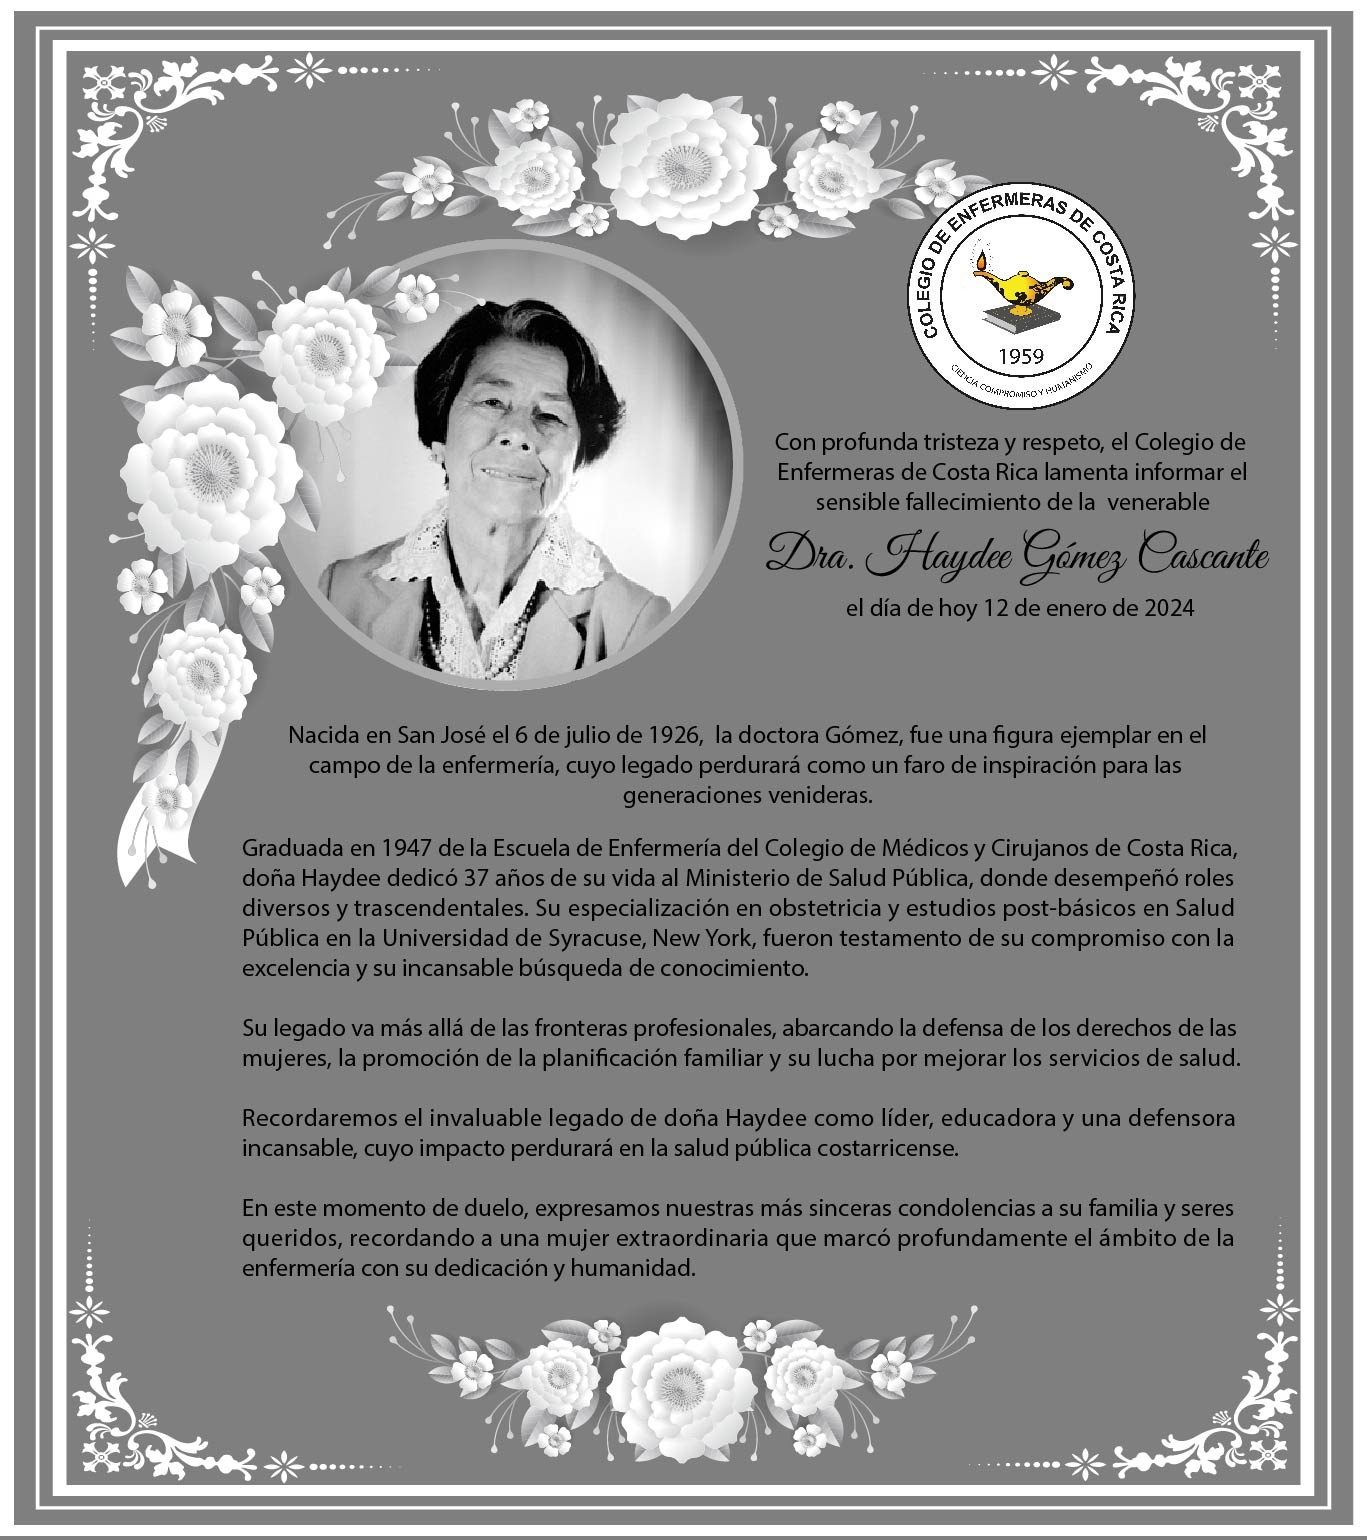 La Federación Panamericana de Profesionales de Enfermería FEPPEN expresa sus Condolencias…